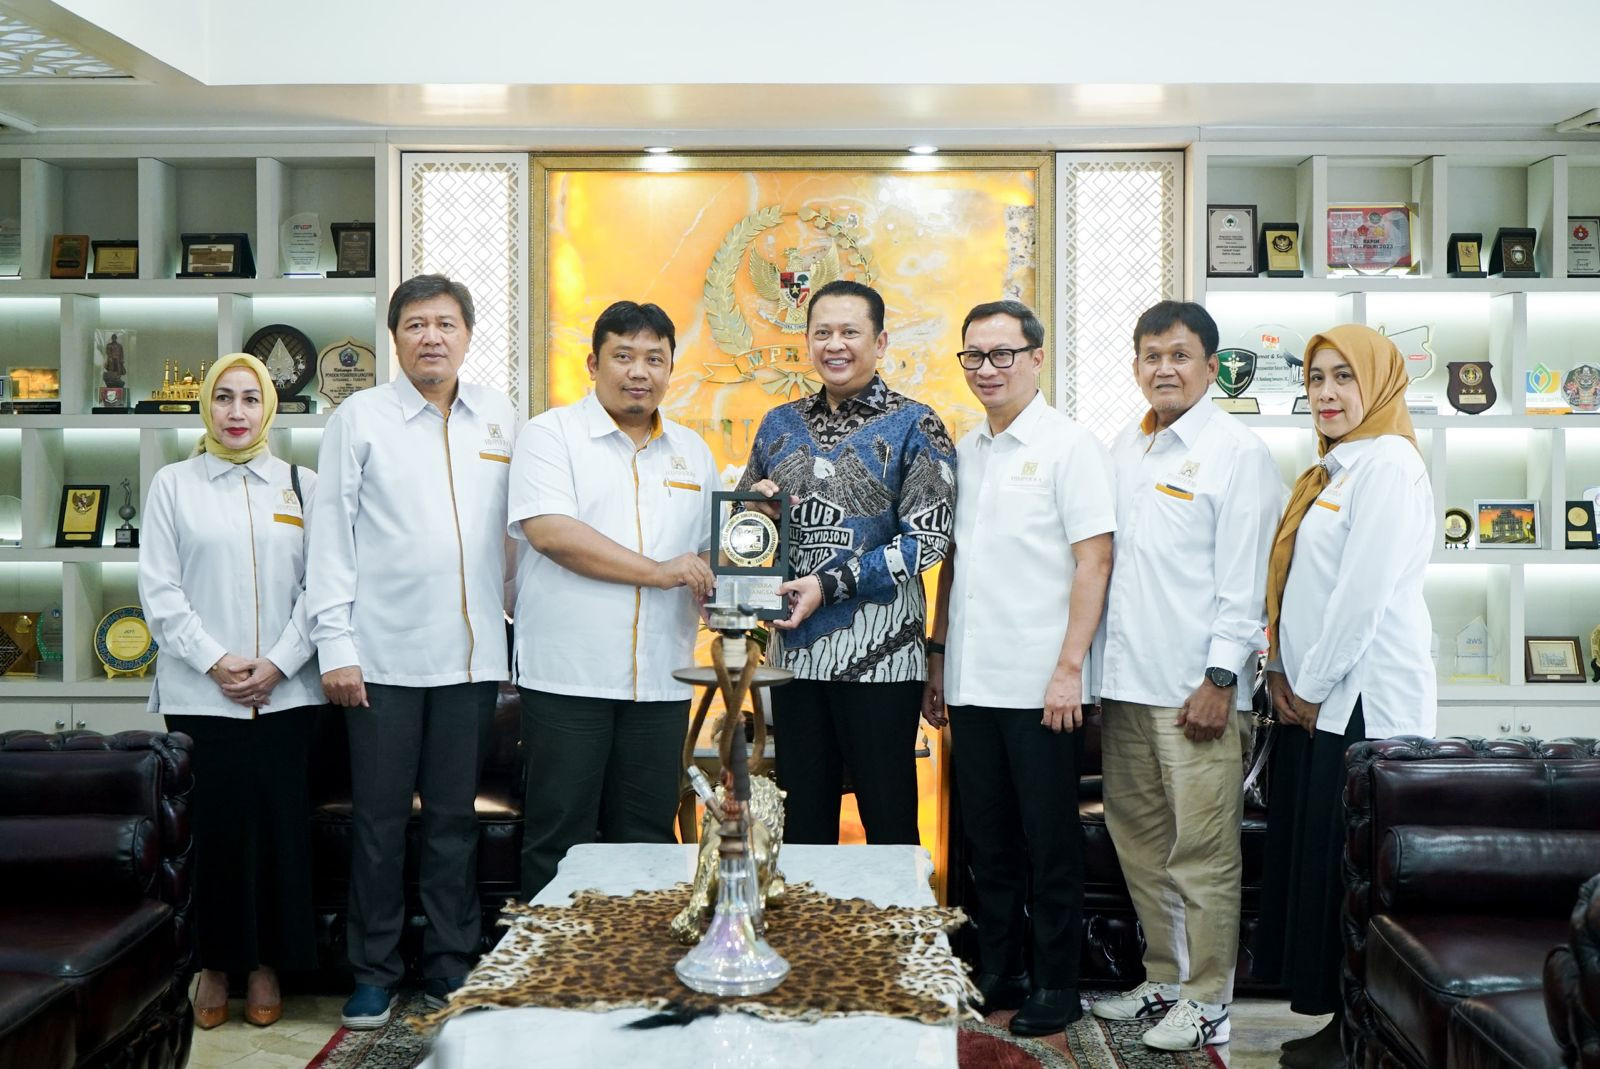 Terima Pengurus Himperra, Ketua MPR Dorong Pemenuhan Perumahan Rakyat - JPNN.com